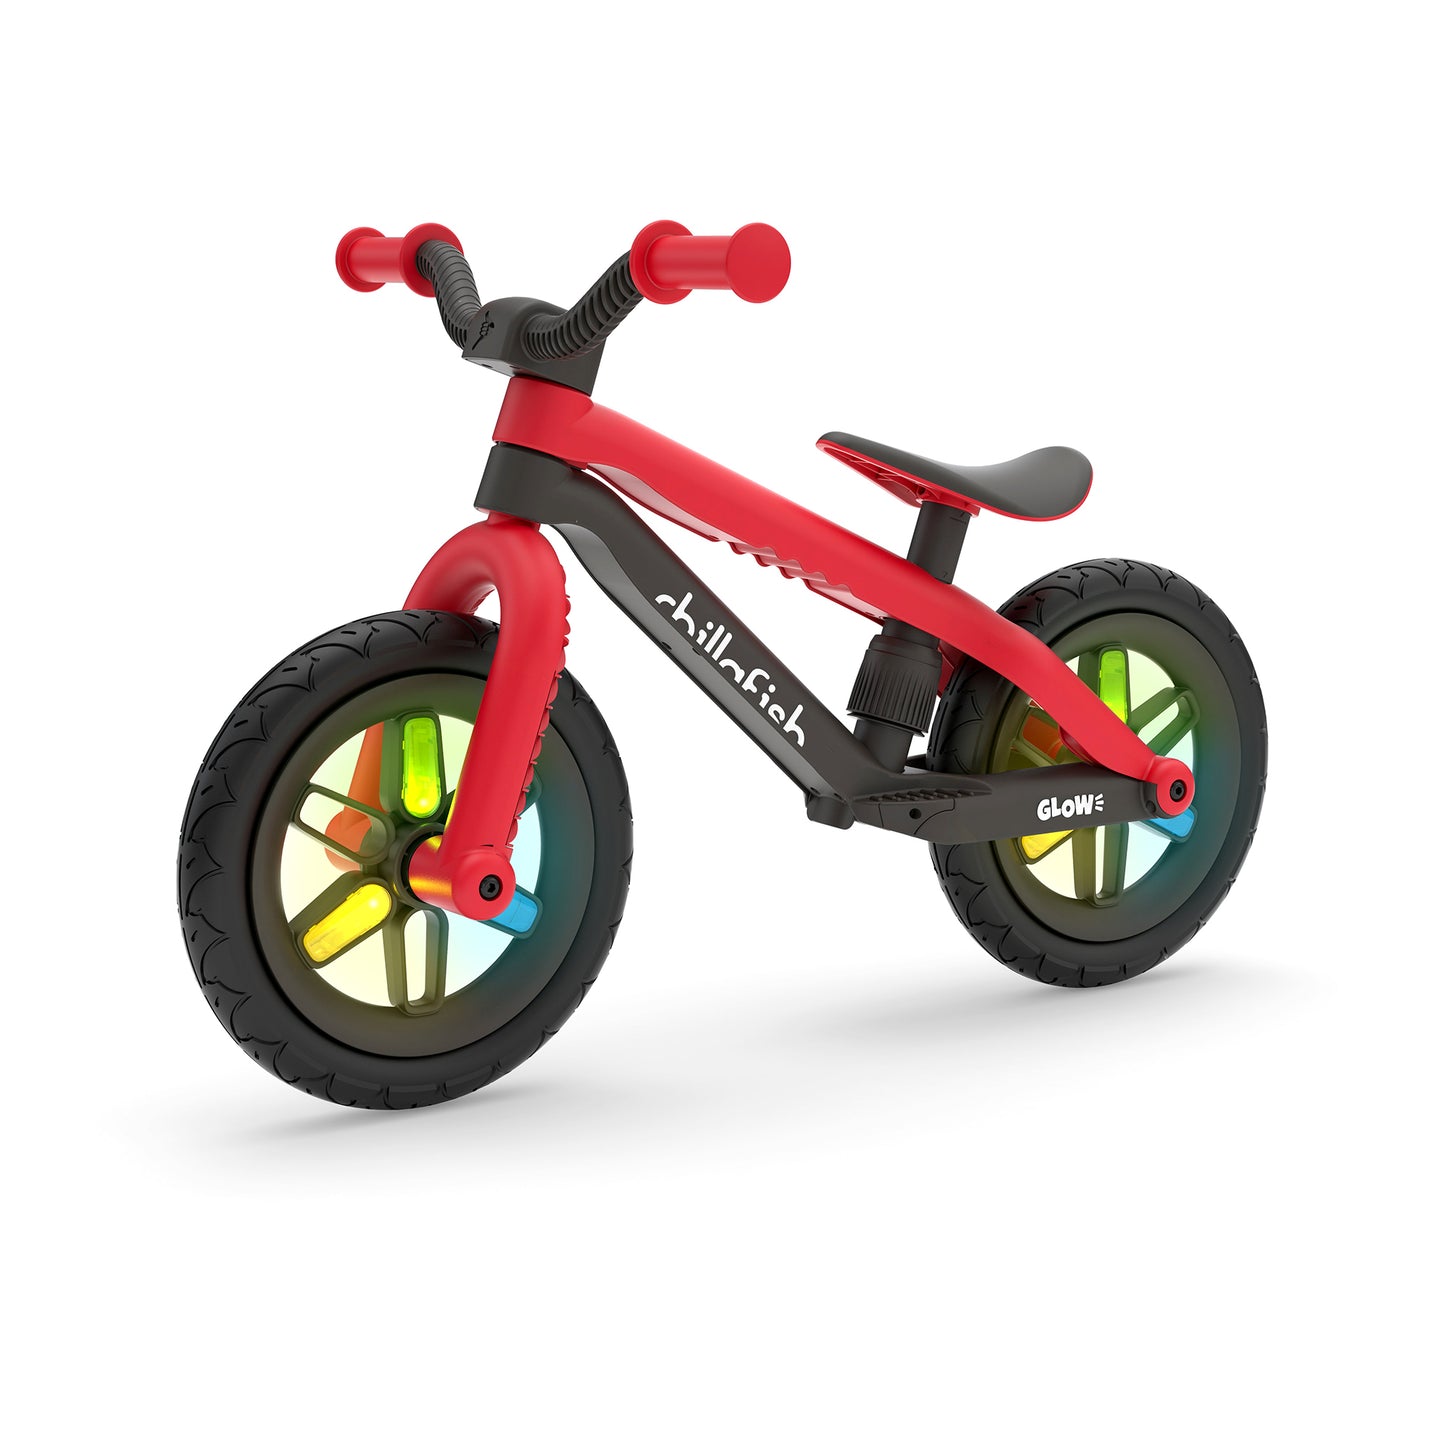 BMXie GLOW - Chillafish BMXie GLOW balance bike with light-up 12" wheels